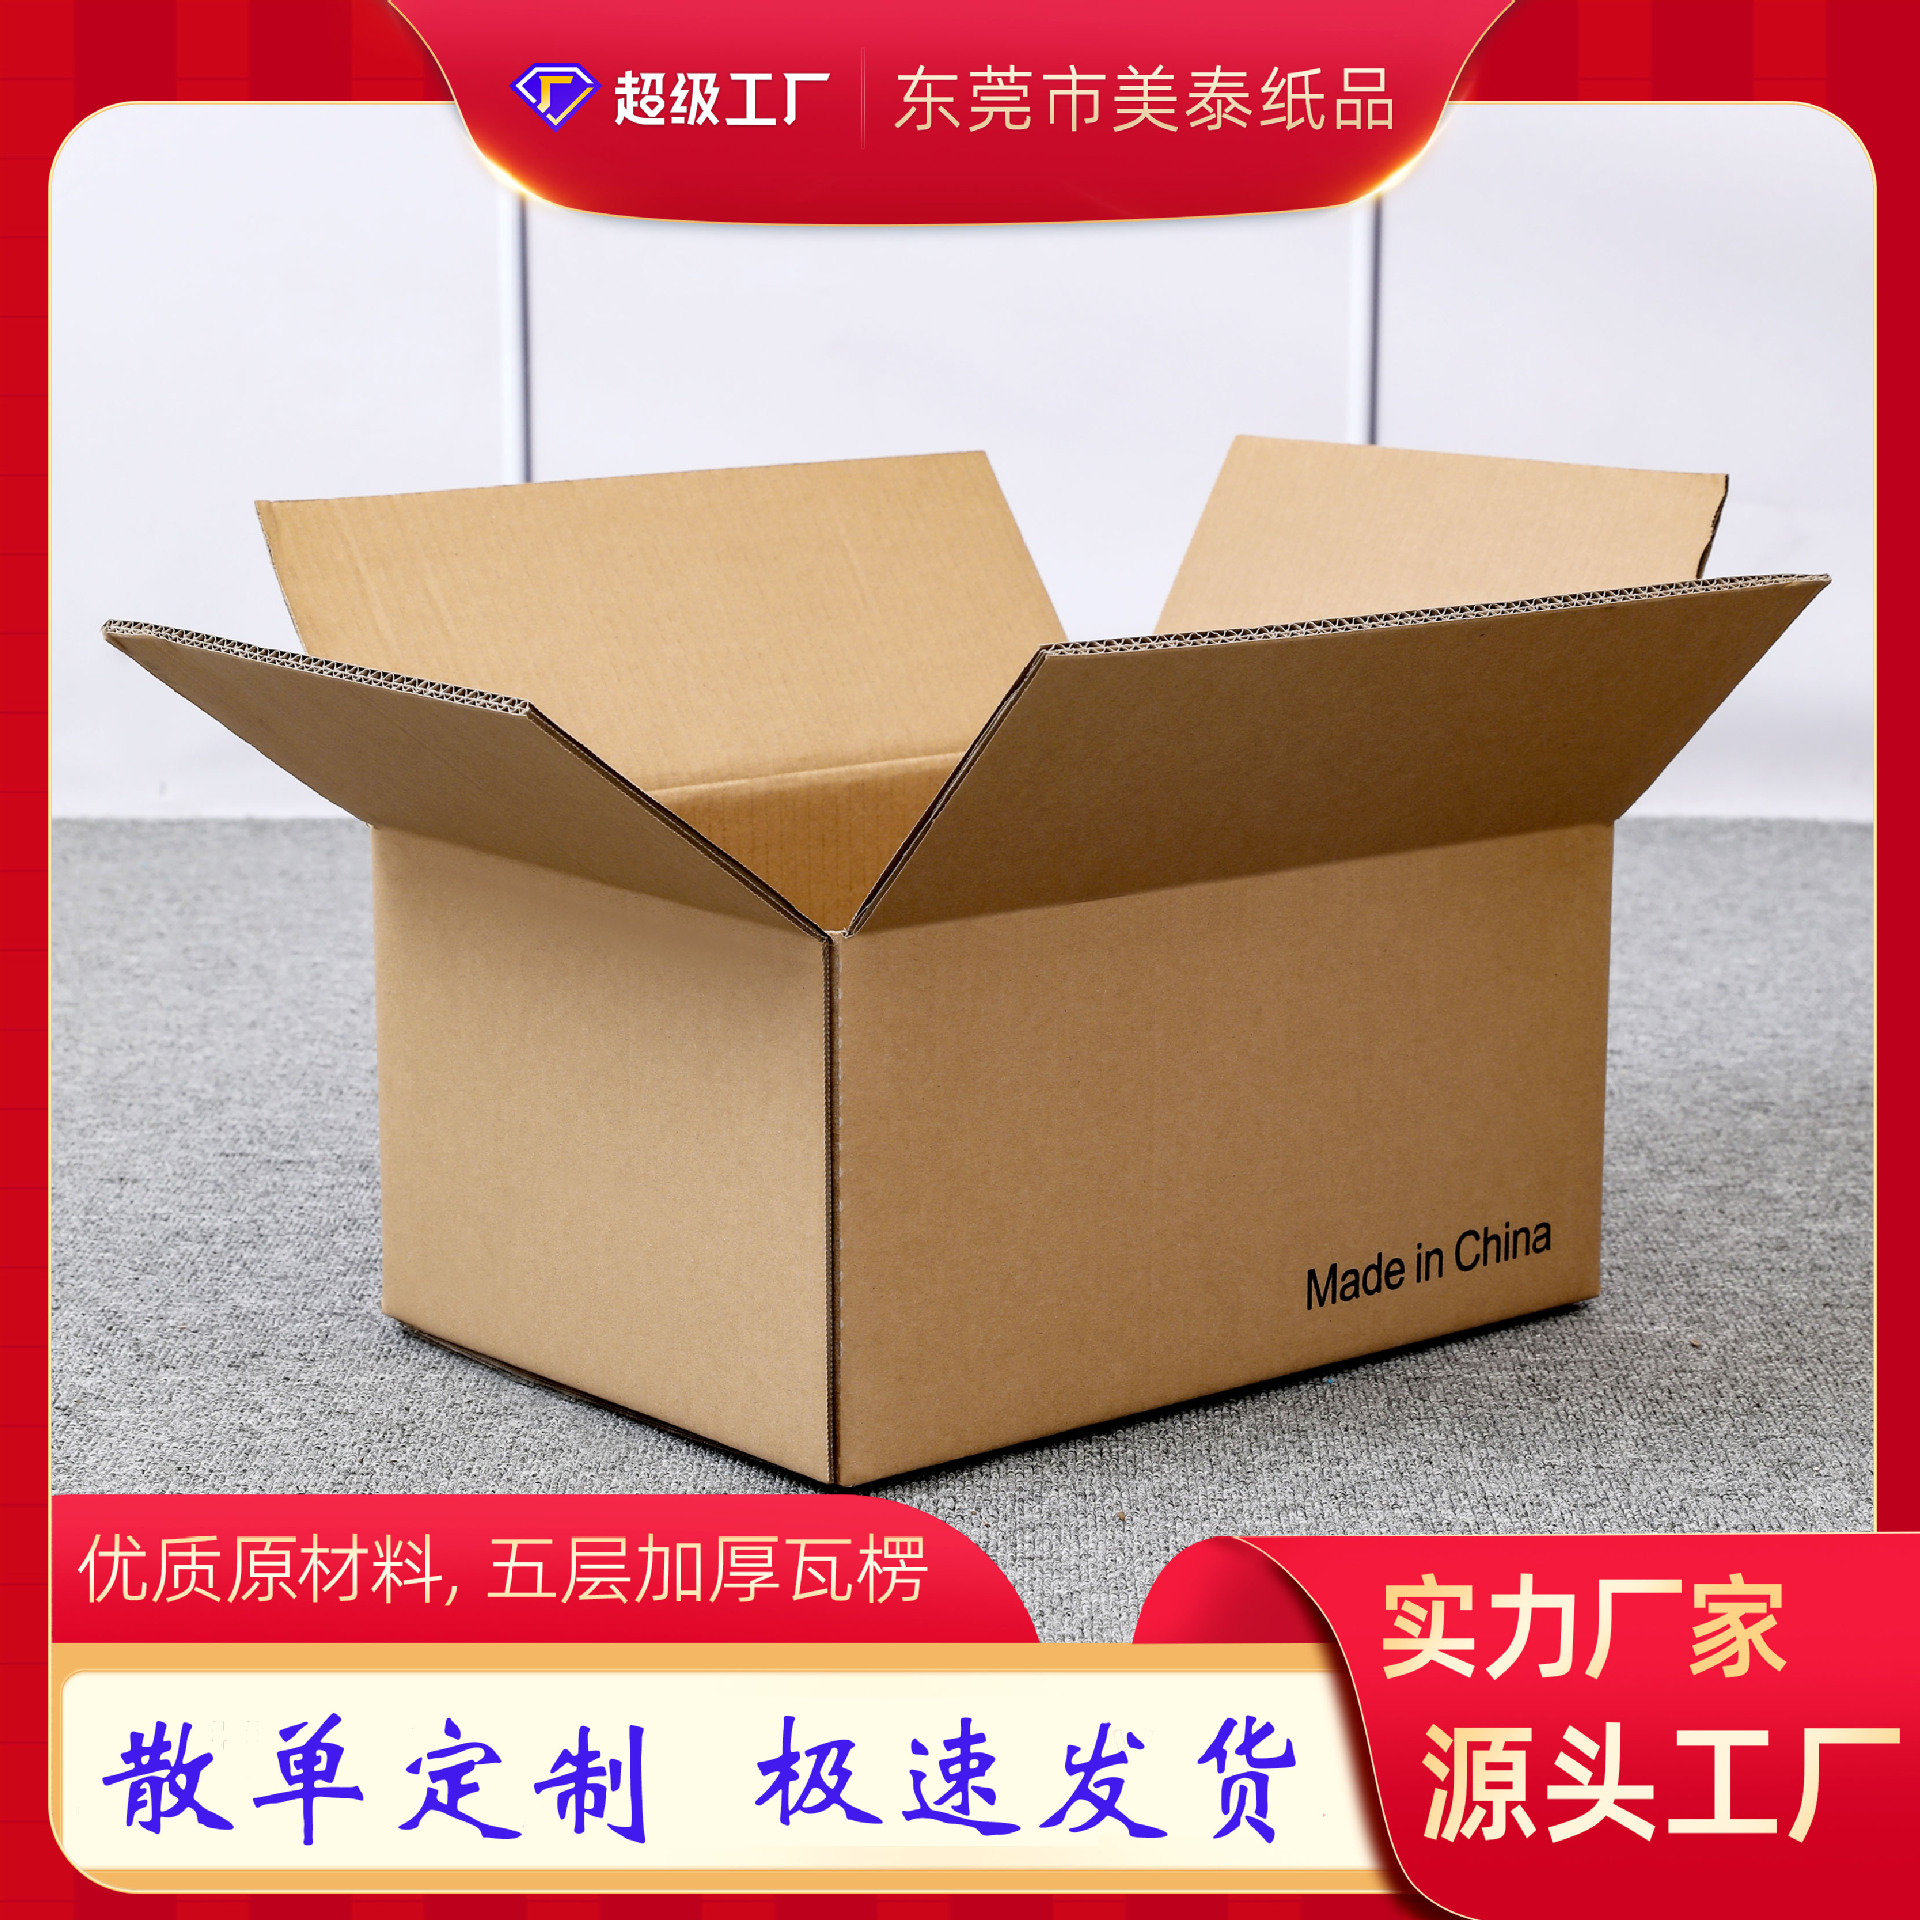 散单定制 亚马逊FBA纸箱定做 极快速发货 厂家批发定制大箱定做